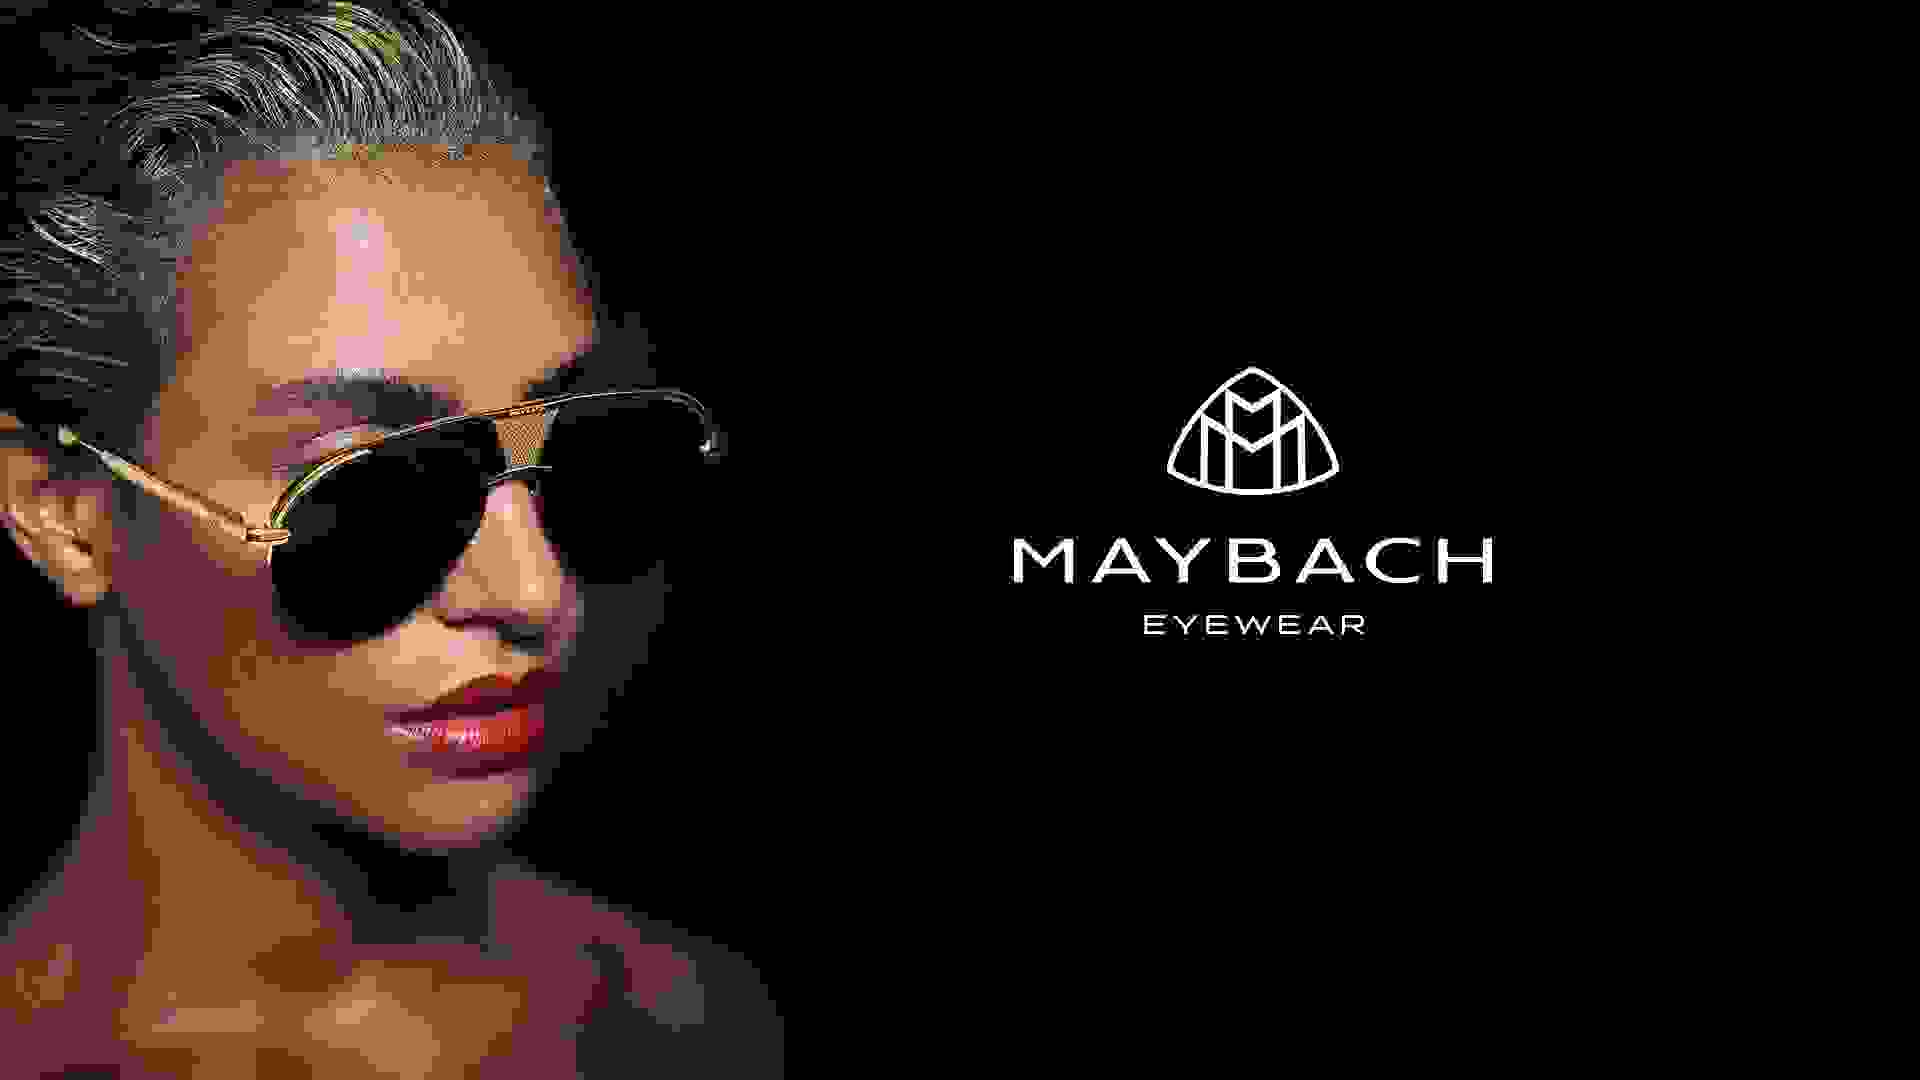 Nahaufnahme von einem Female Model in der linken Bildhälfte, das eine Maybach Sonnenbrille mit goldenen Details trägt und rechts großes Maybach Eyewear Logo.